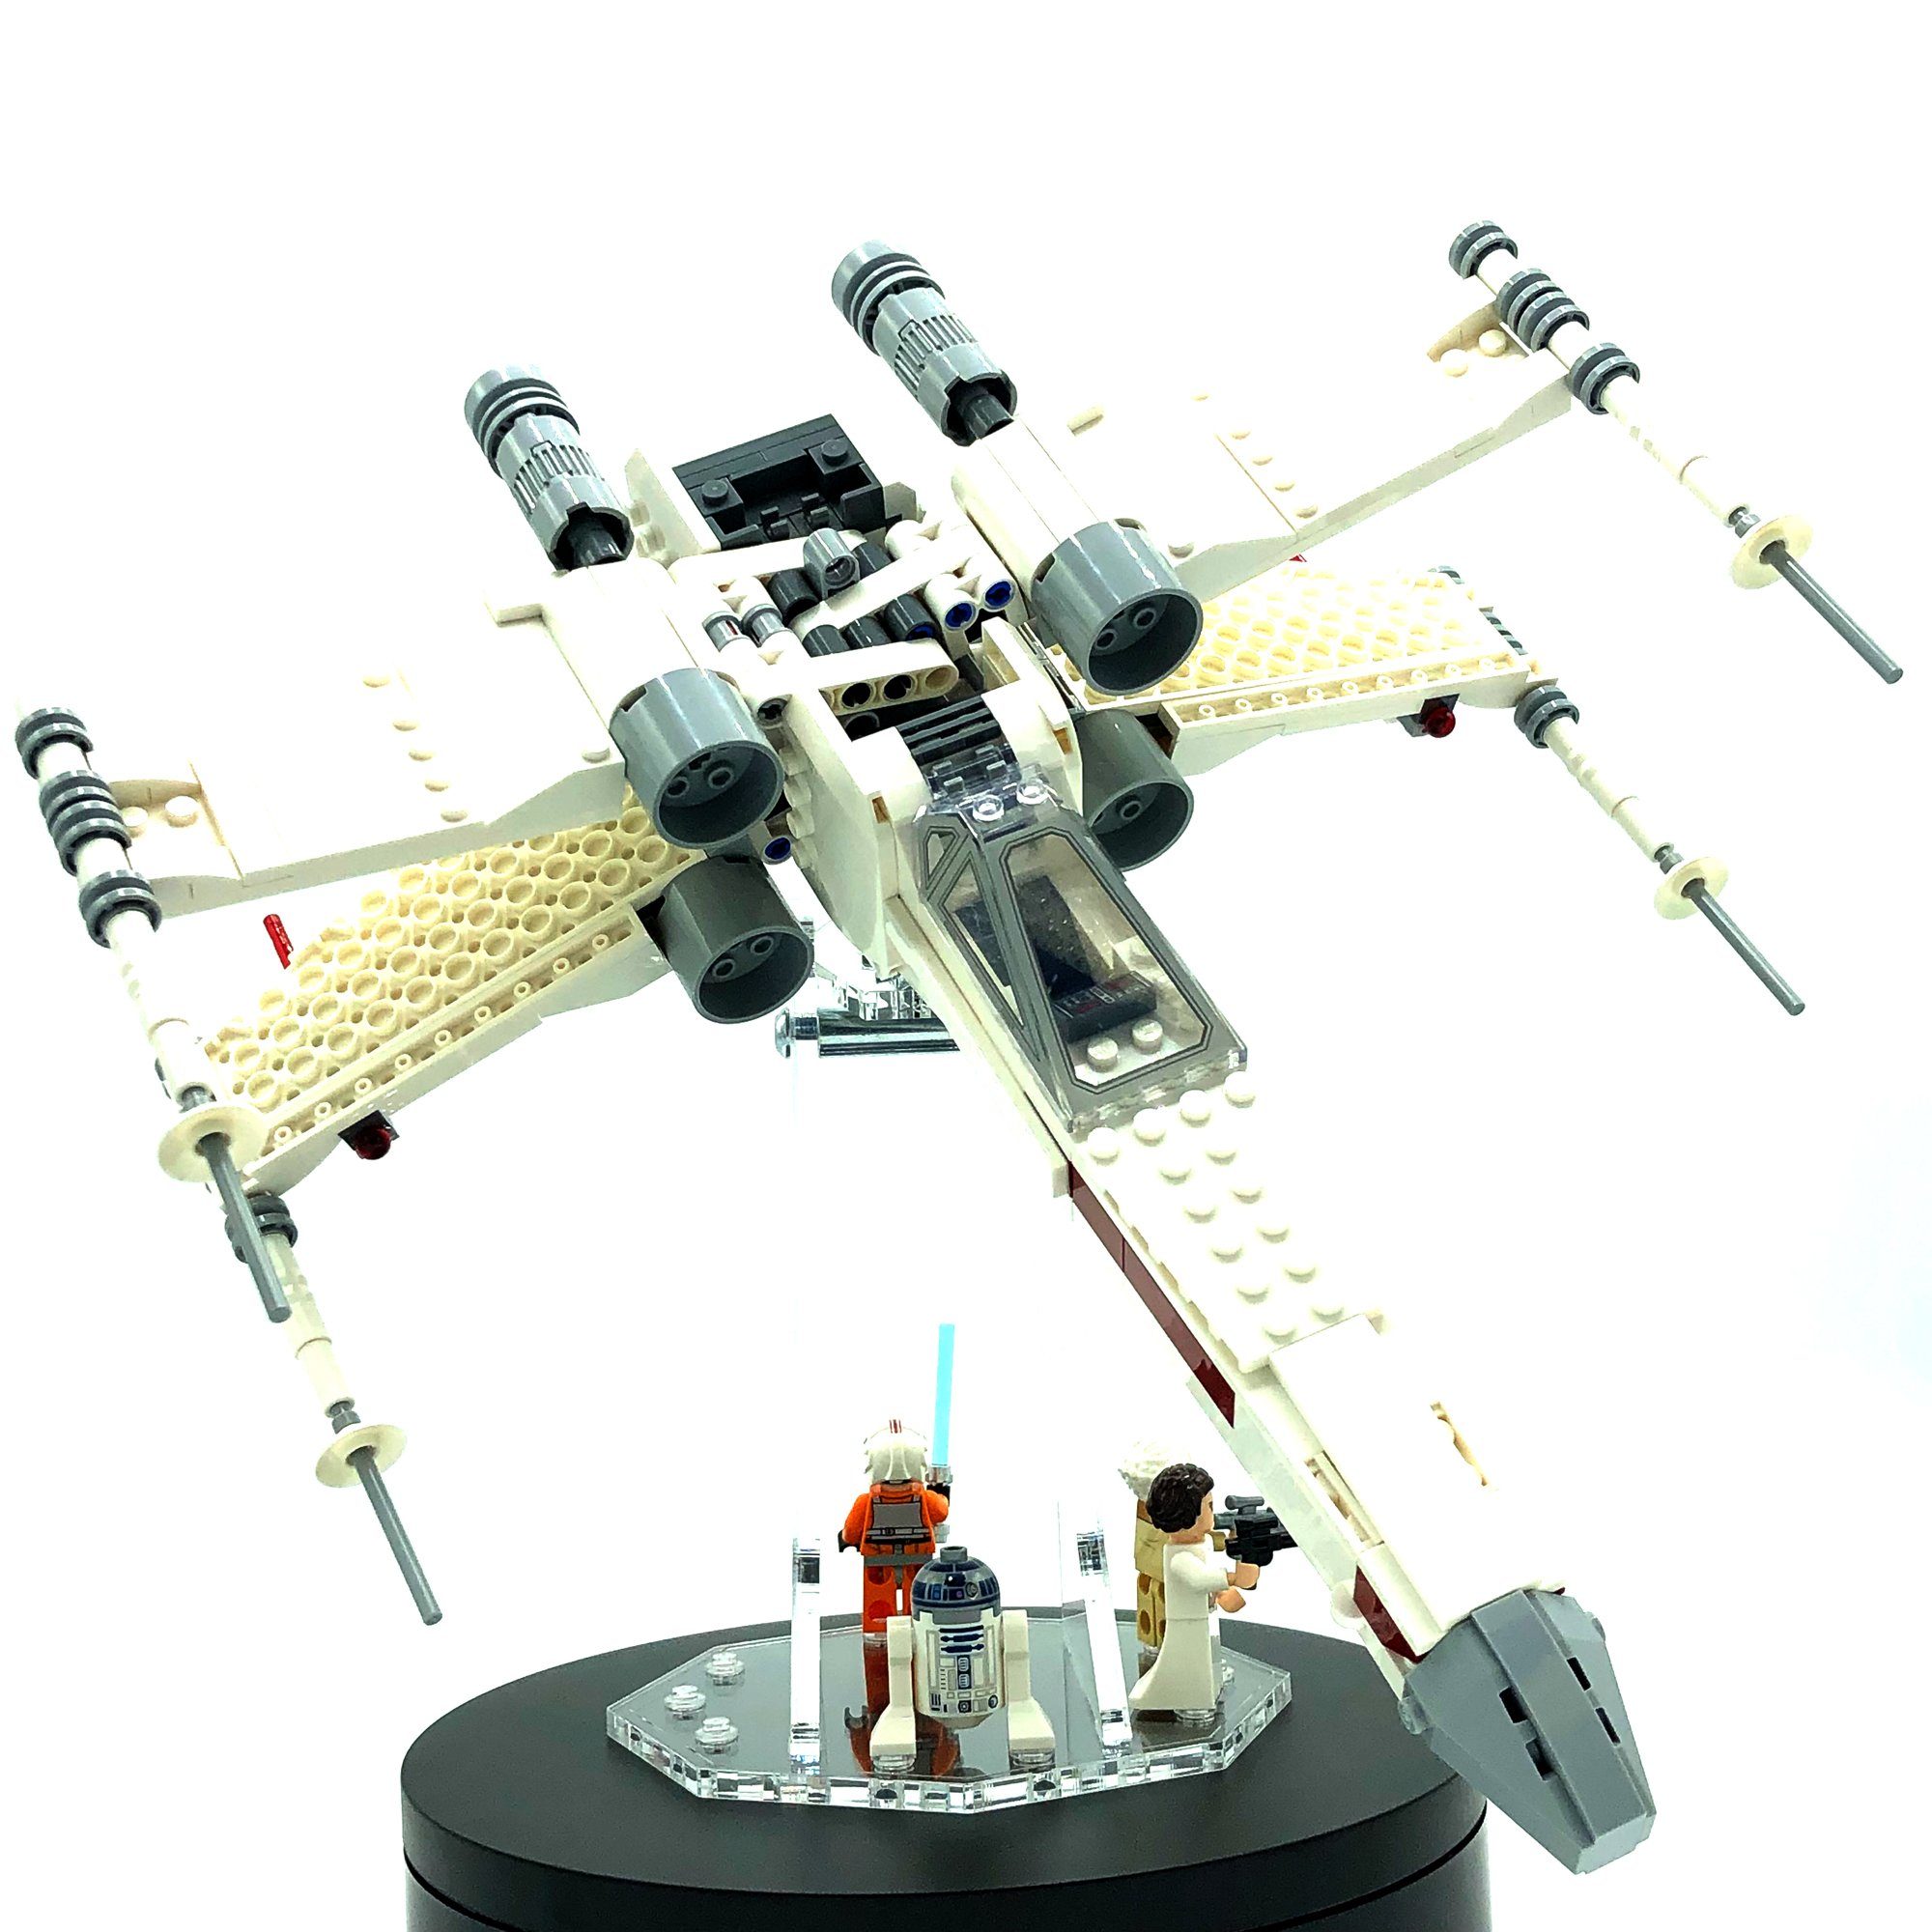 75301 Display Positionen Unterseite wählbar für 3 Winkel ist. Noppenplatten Passend Standfuß denen LEGO 75301 Platz Acryl alle Standfuß LEGO für und Ausstellungsständer mitgelieferten alle - X-Wing - der der für Acryl an Modelle verschiedene einstellbar., Größen Luke AREA17 und - Fighter Stand eine bei Skywalker's